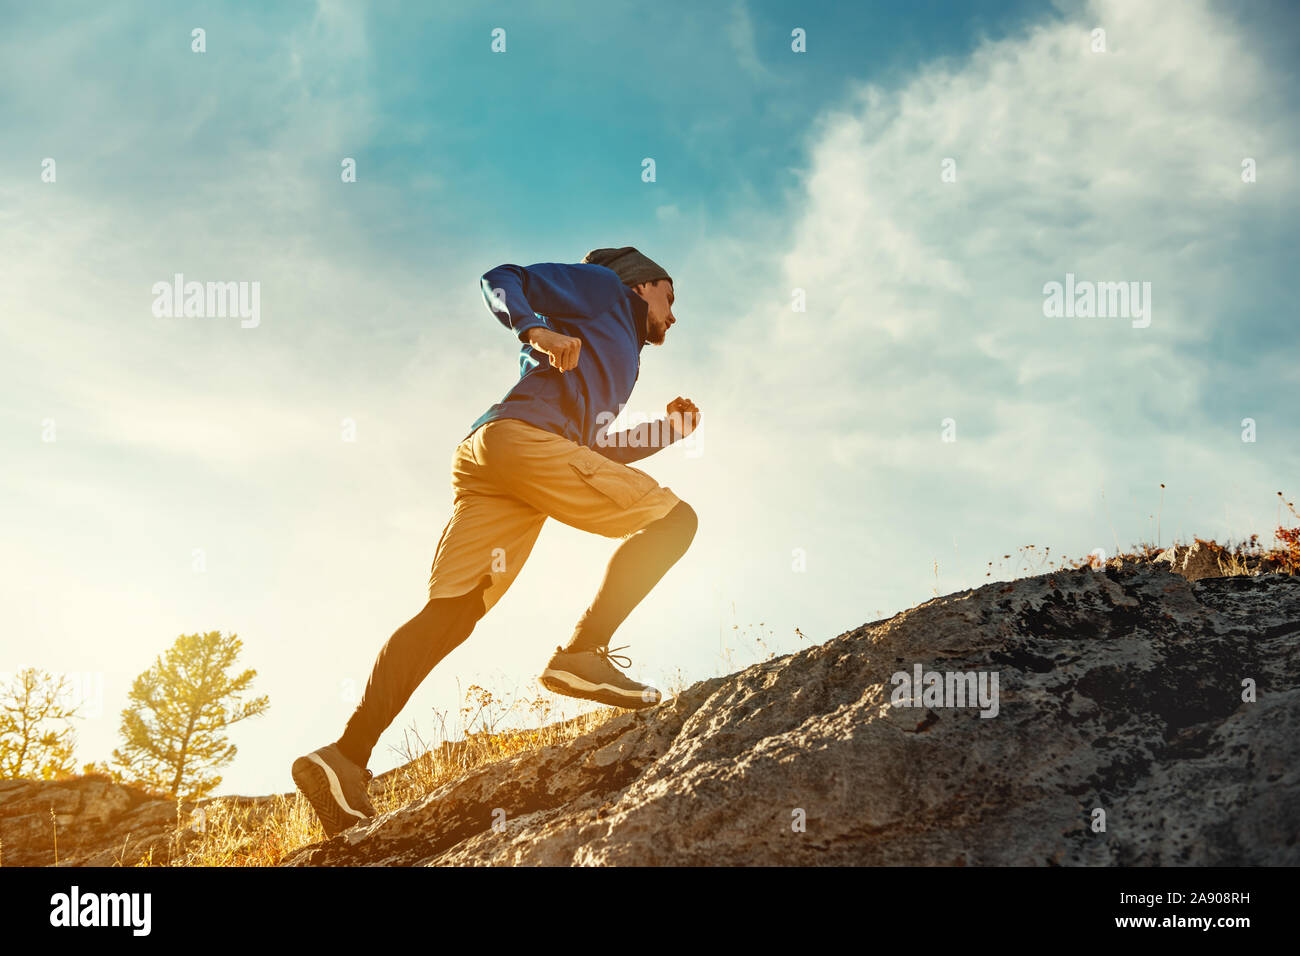 Skyrunner athlete runs uphill against sunset or sunrise sky and sun. Skyrunning concept Stock Photo